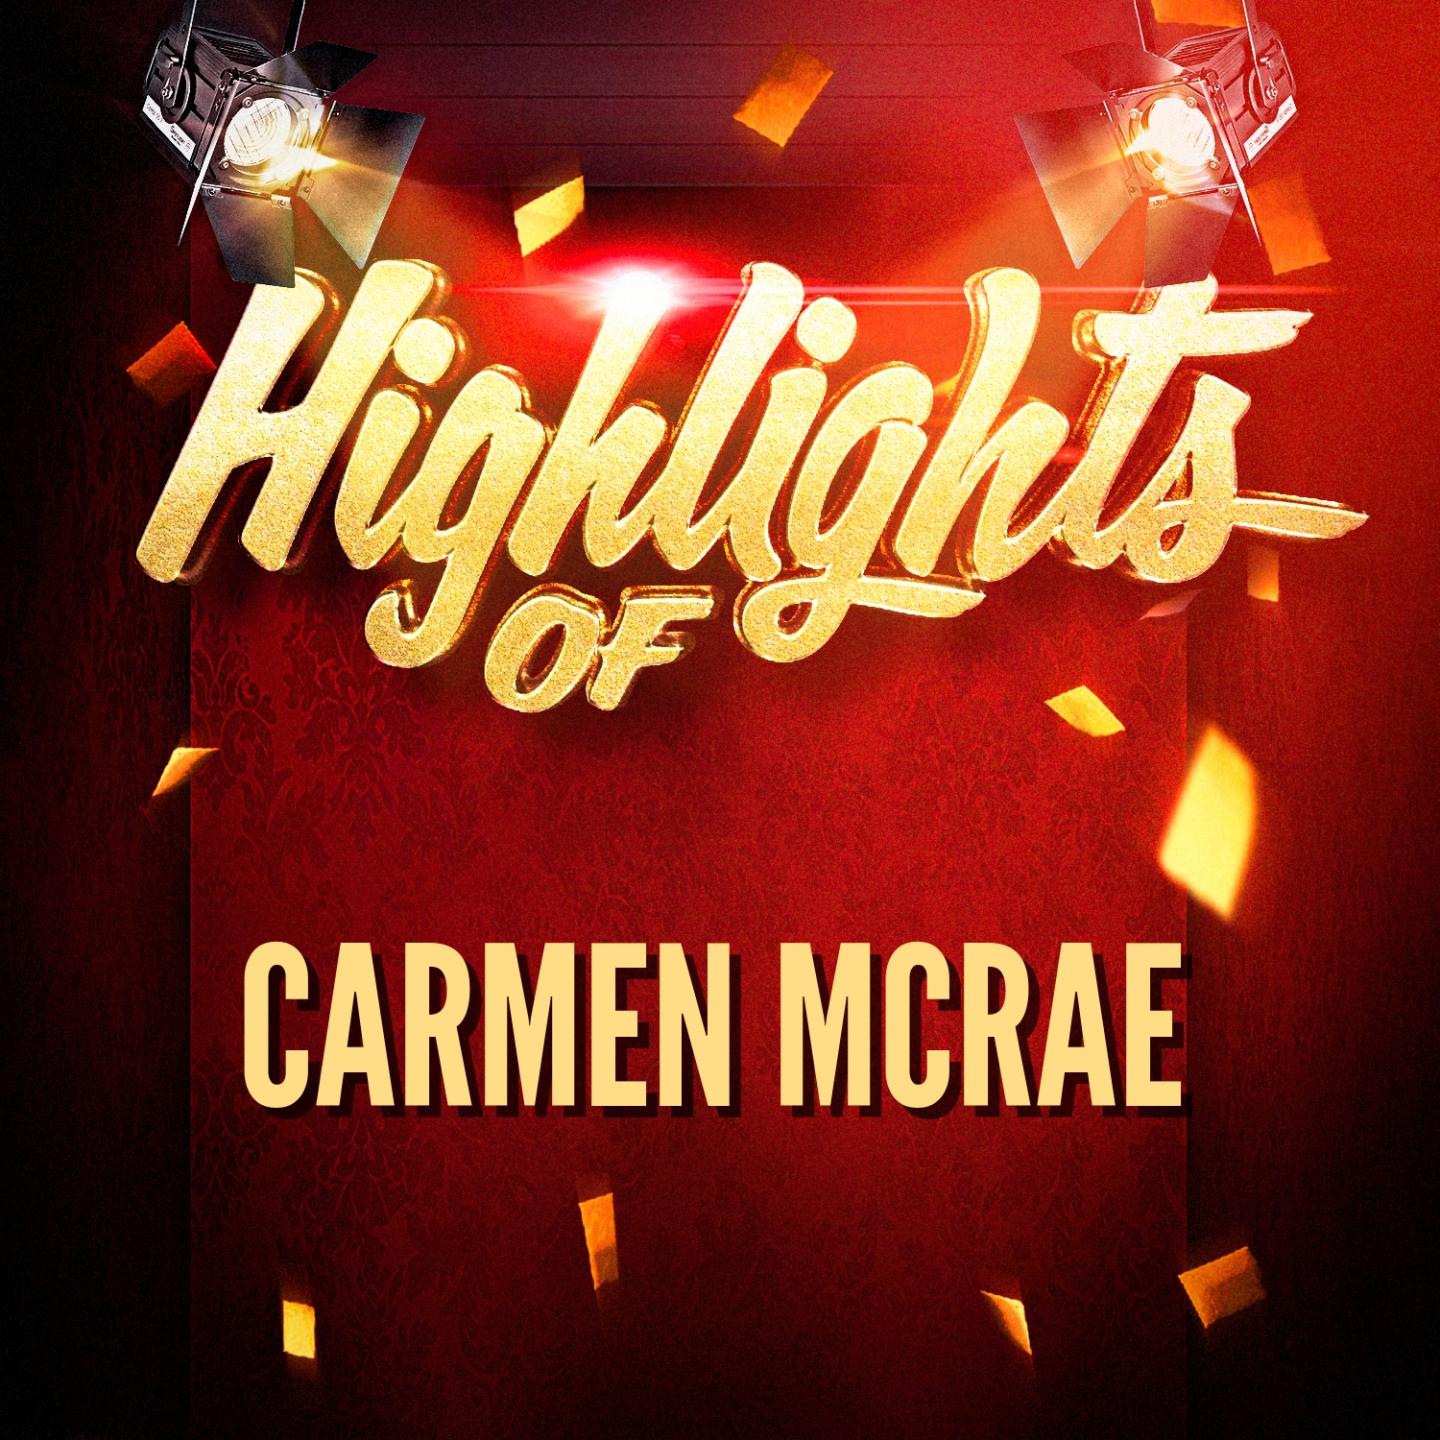 Highlights of Carmen McRae